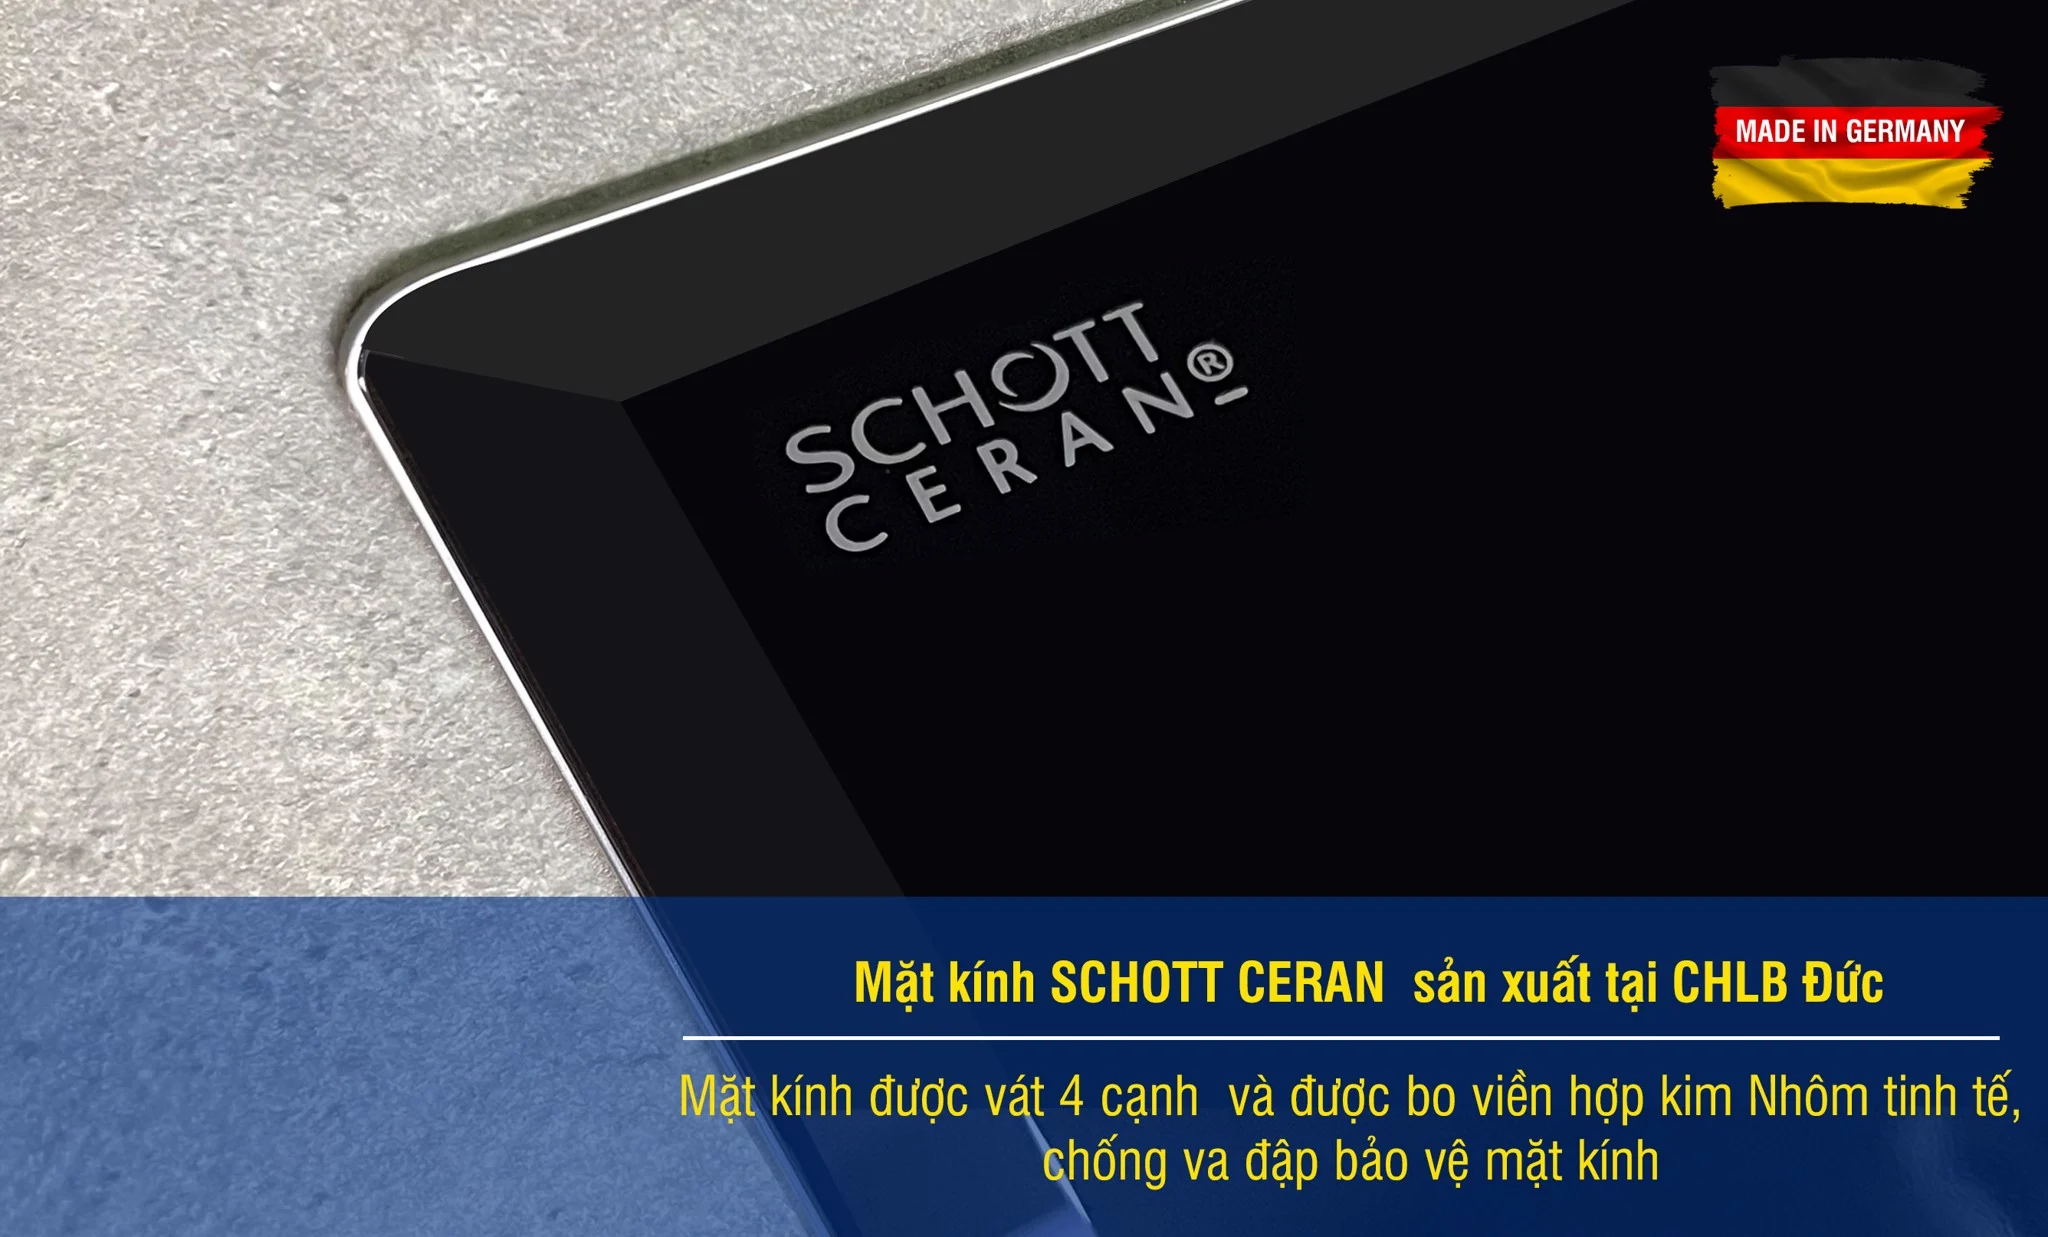 Bếp từ EU-T899G được sử dụng mặt kính Schott Ceran từ CHLB Đức với kích thước lớn lên tới 760*450mm